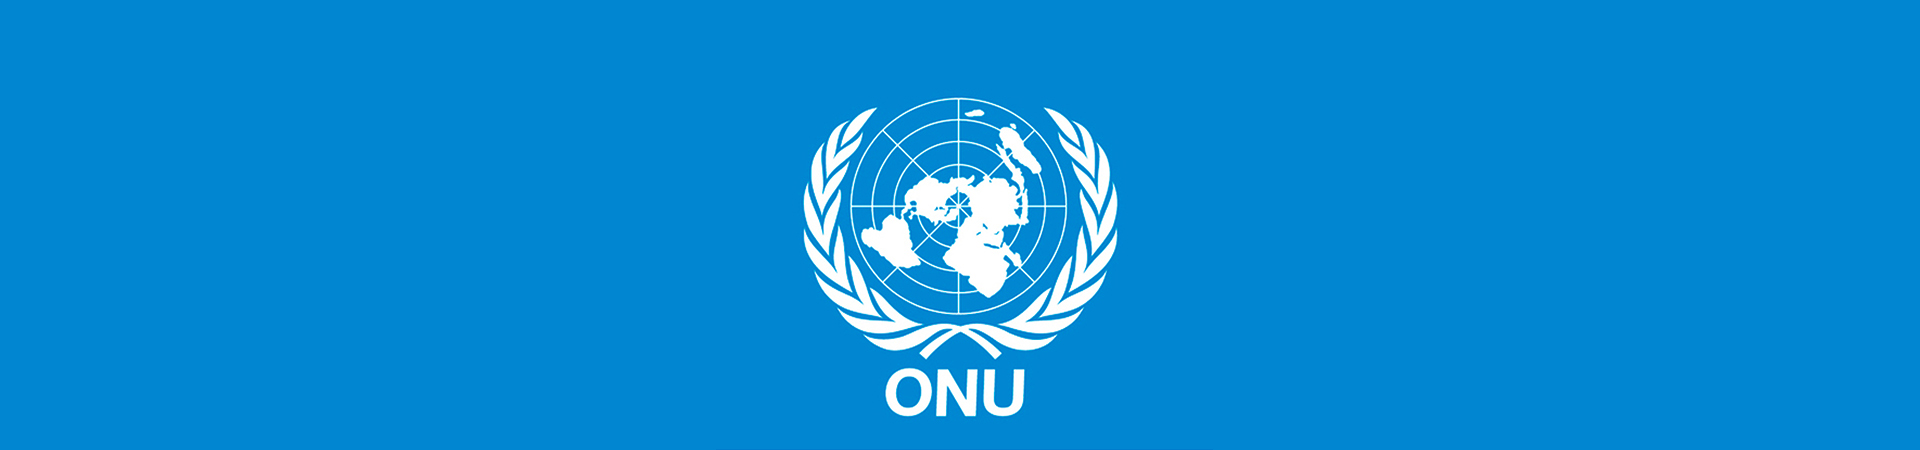 Imagem do símbolo da ONU